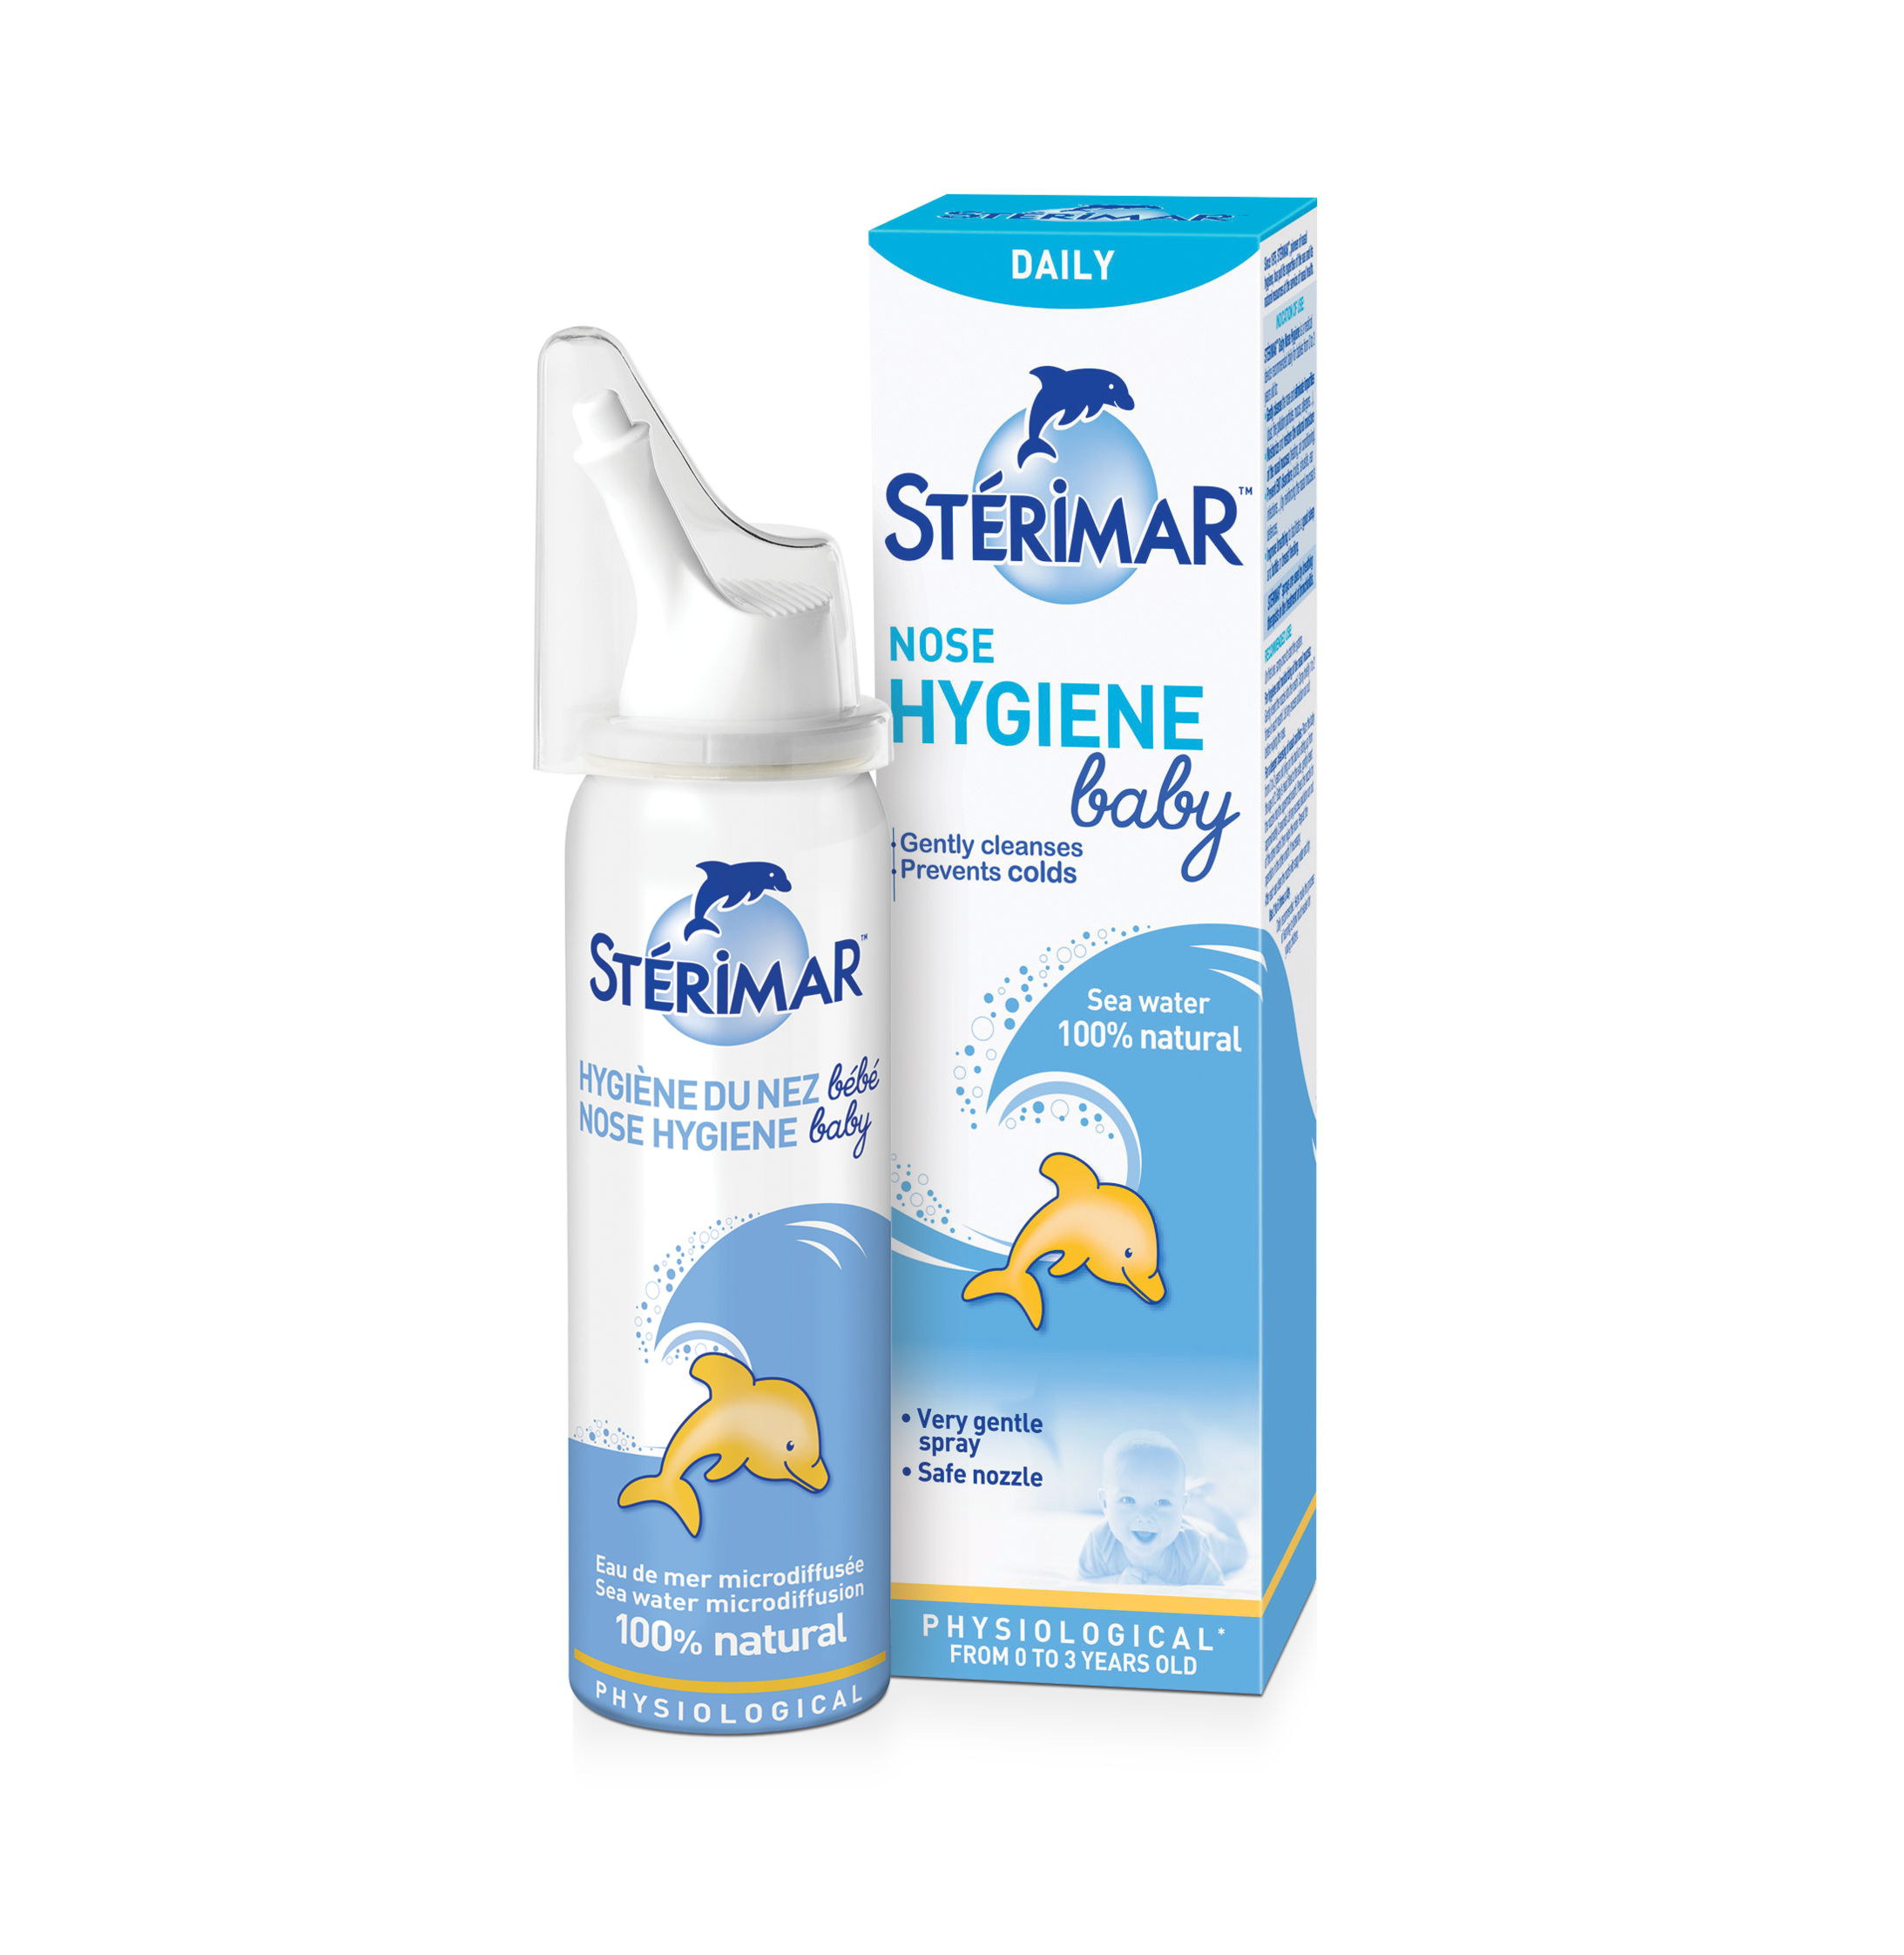 Sterimar Nose Hygiene Baby 50ml - Dung dịch xịt mũi hằng ngày đẳng trương cho trẻ từ 0 - 3 tuổi